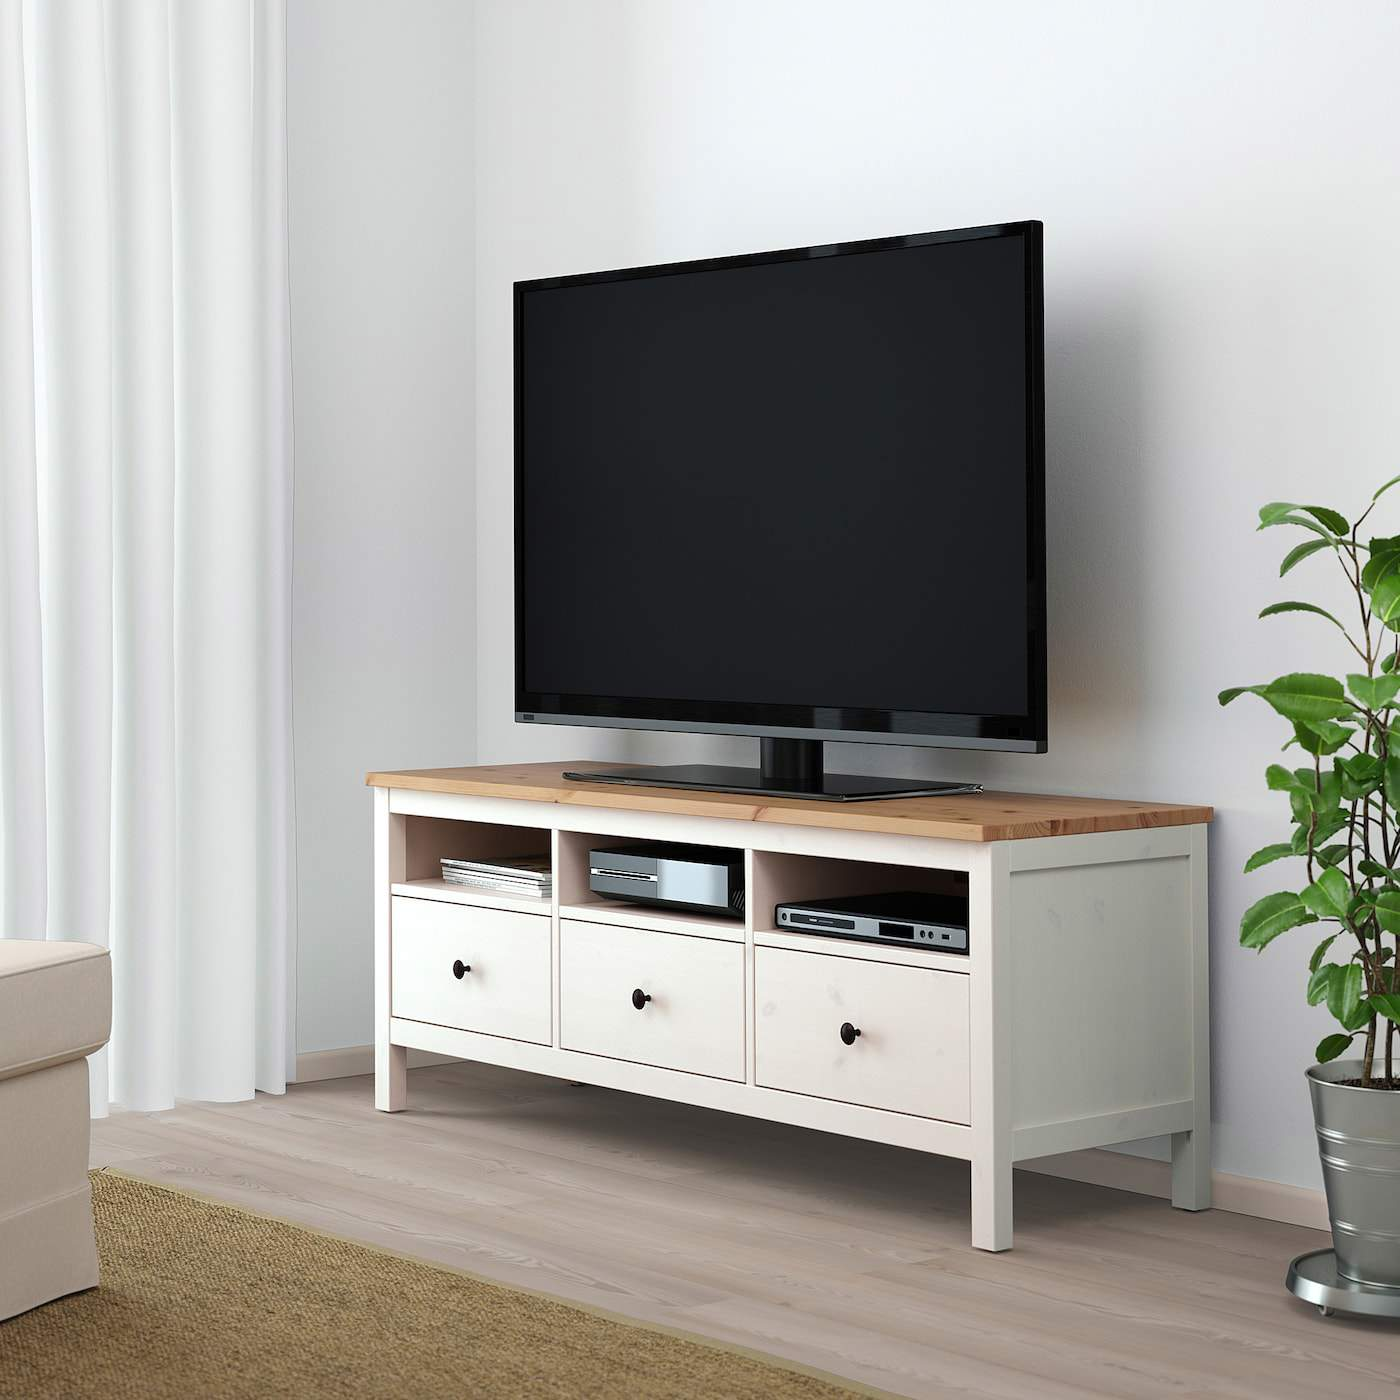 Hemnes: mueble para la televisión con 3 cajones